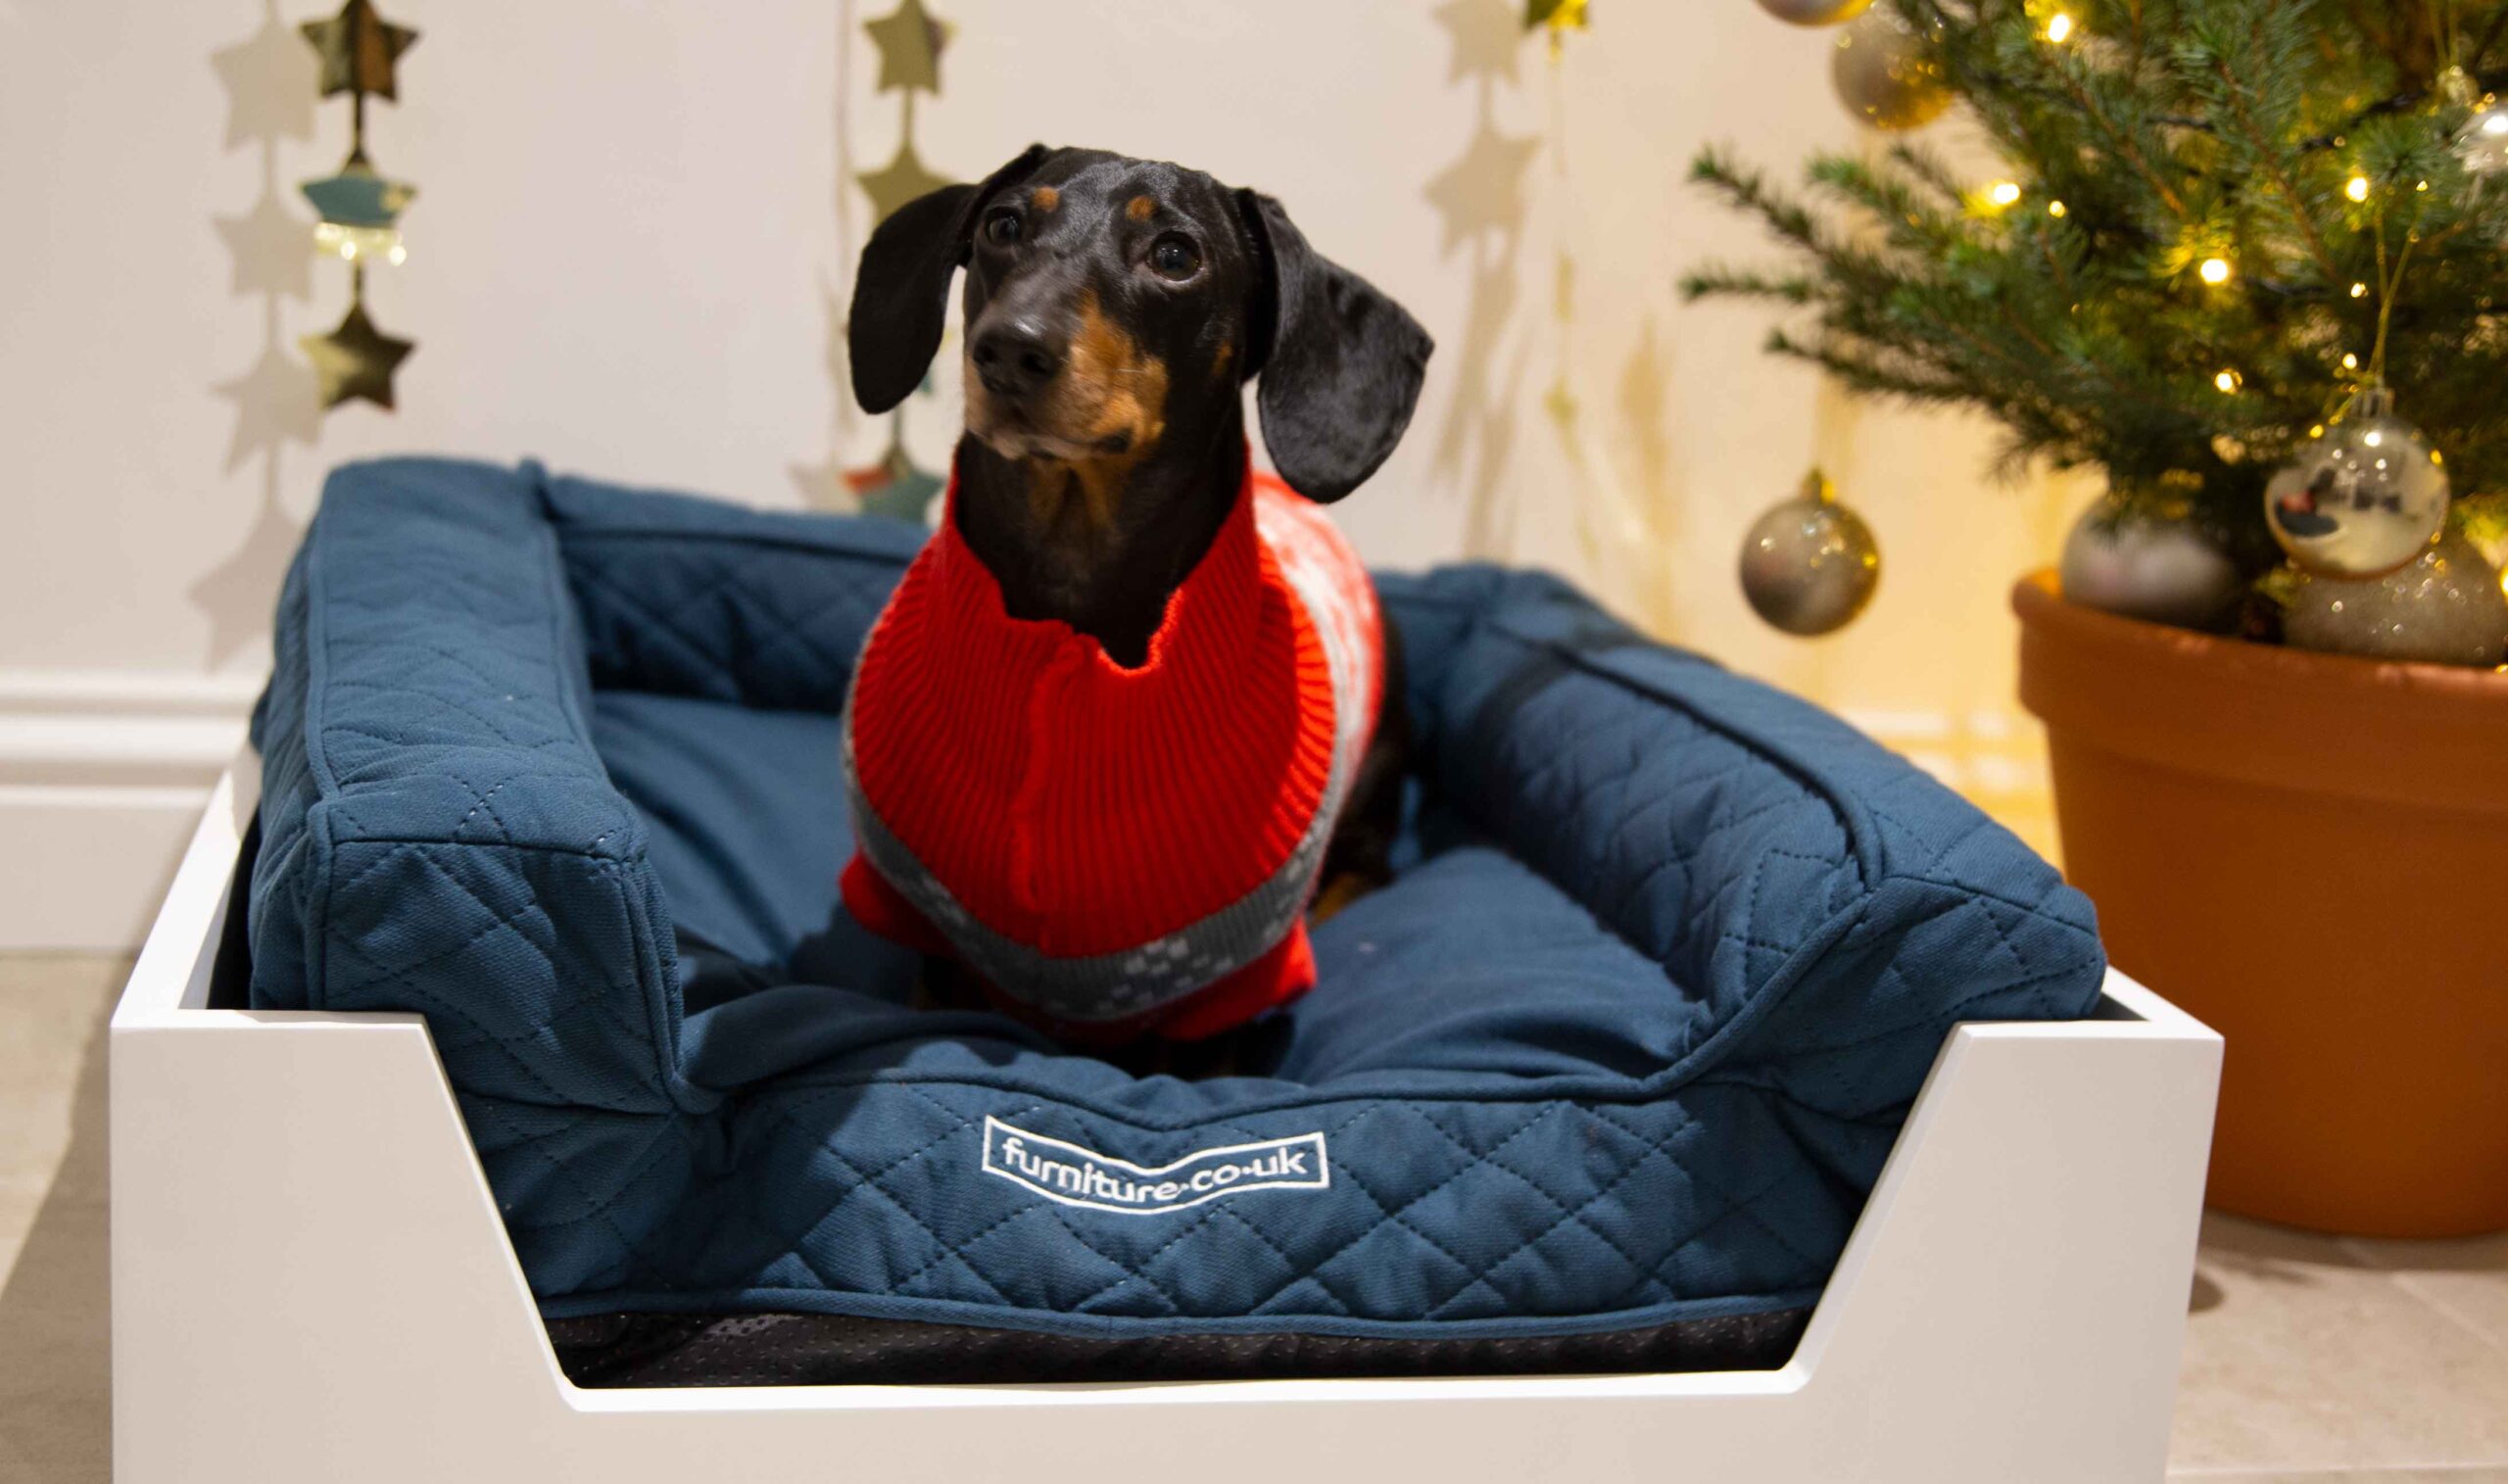 Dog bed at Christmas